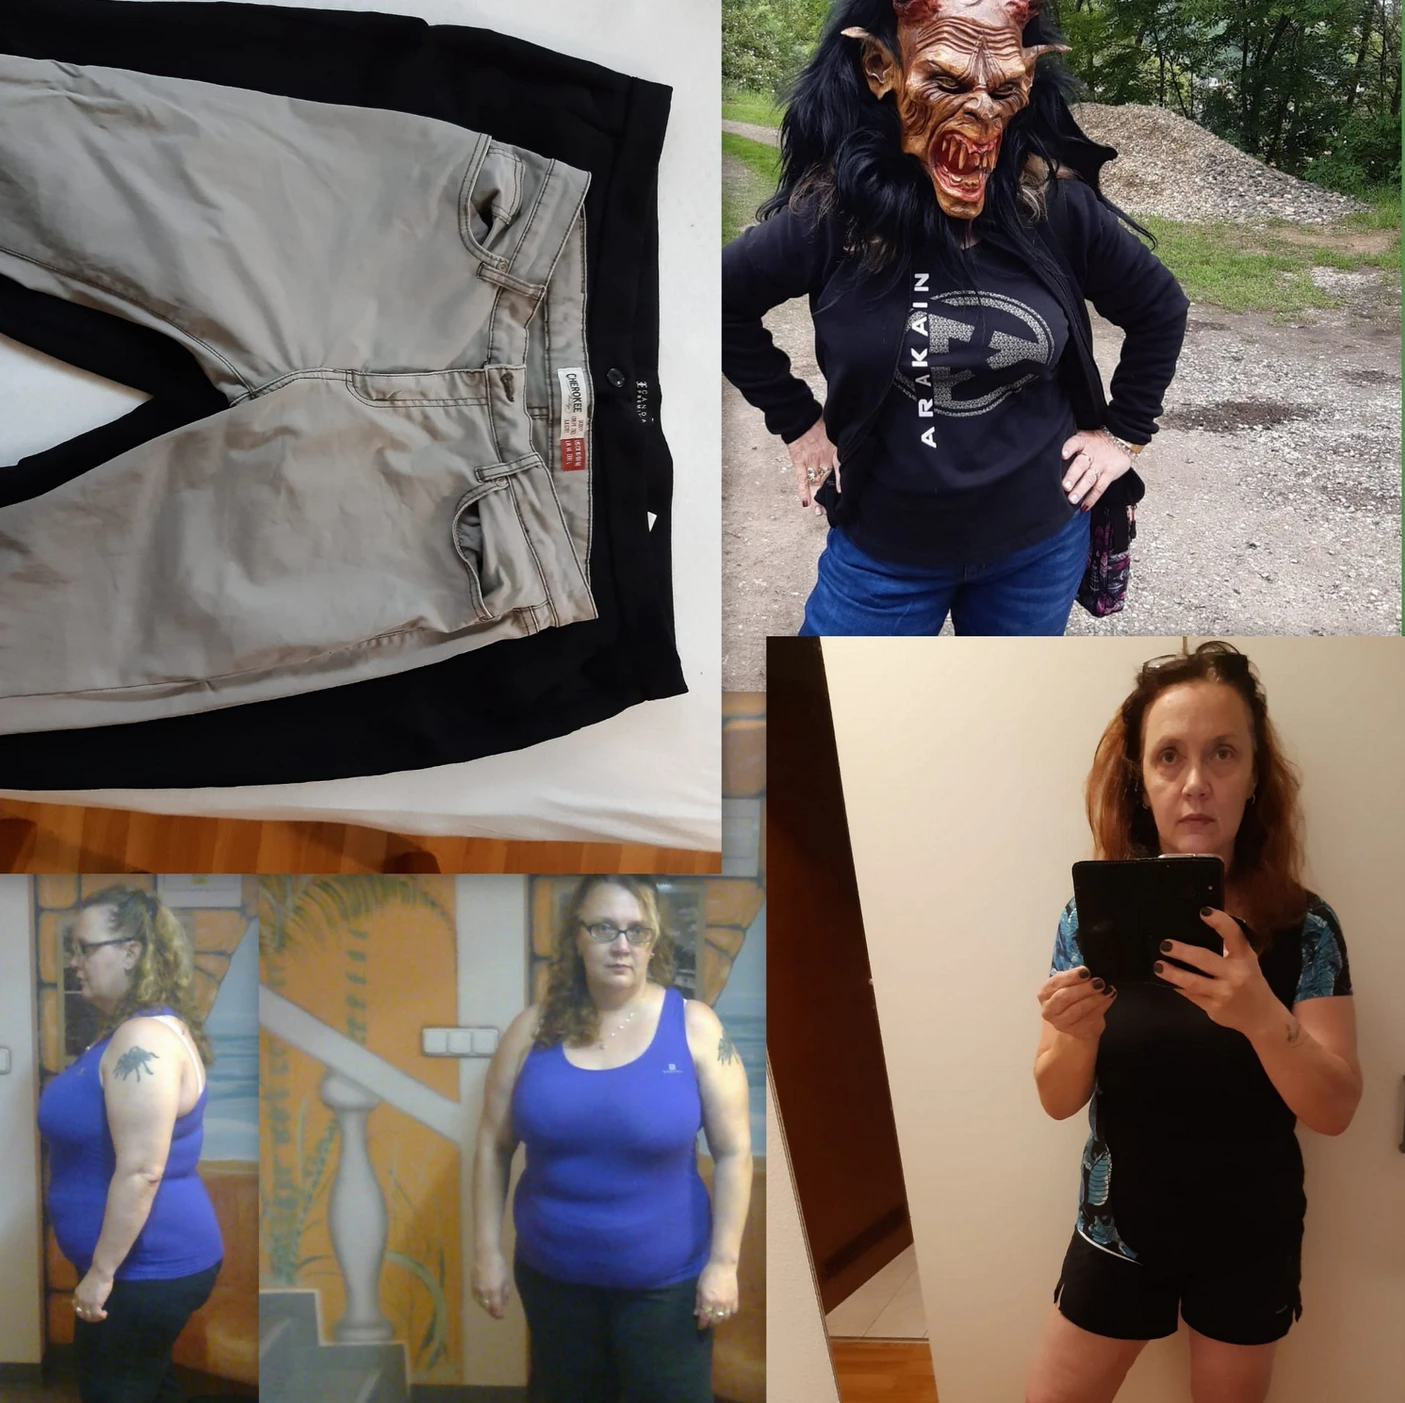 Nízkosacharidová dieta jí změnila život. Za 12 měsíců zhubla 30 kg a „zbavila“ se cukrovky 2. typu